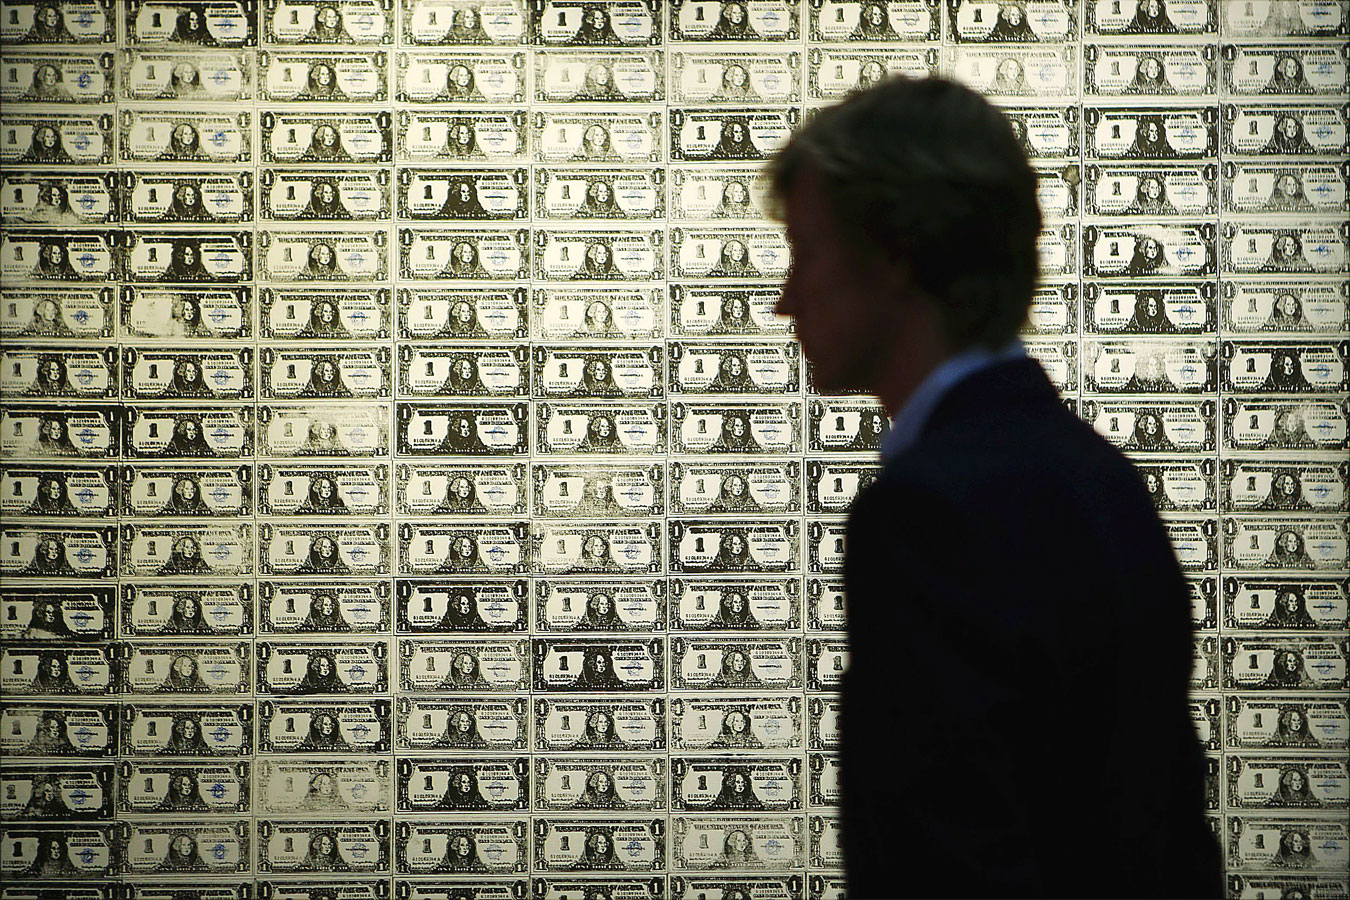 192 one dollar bills - Andy Warhol